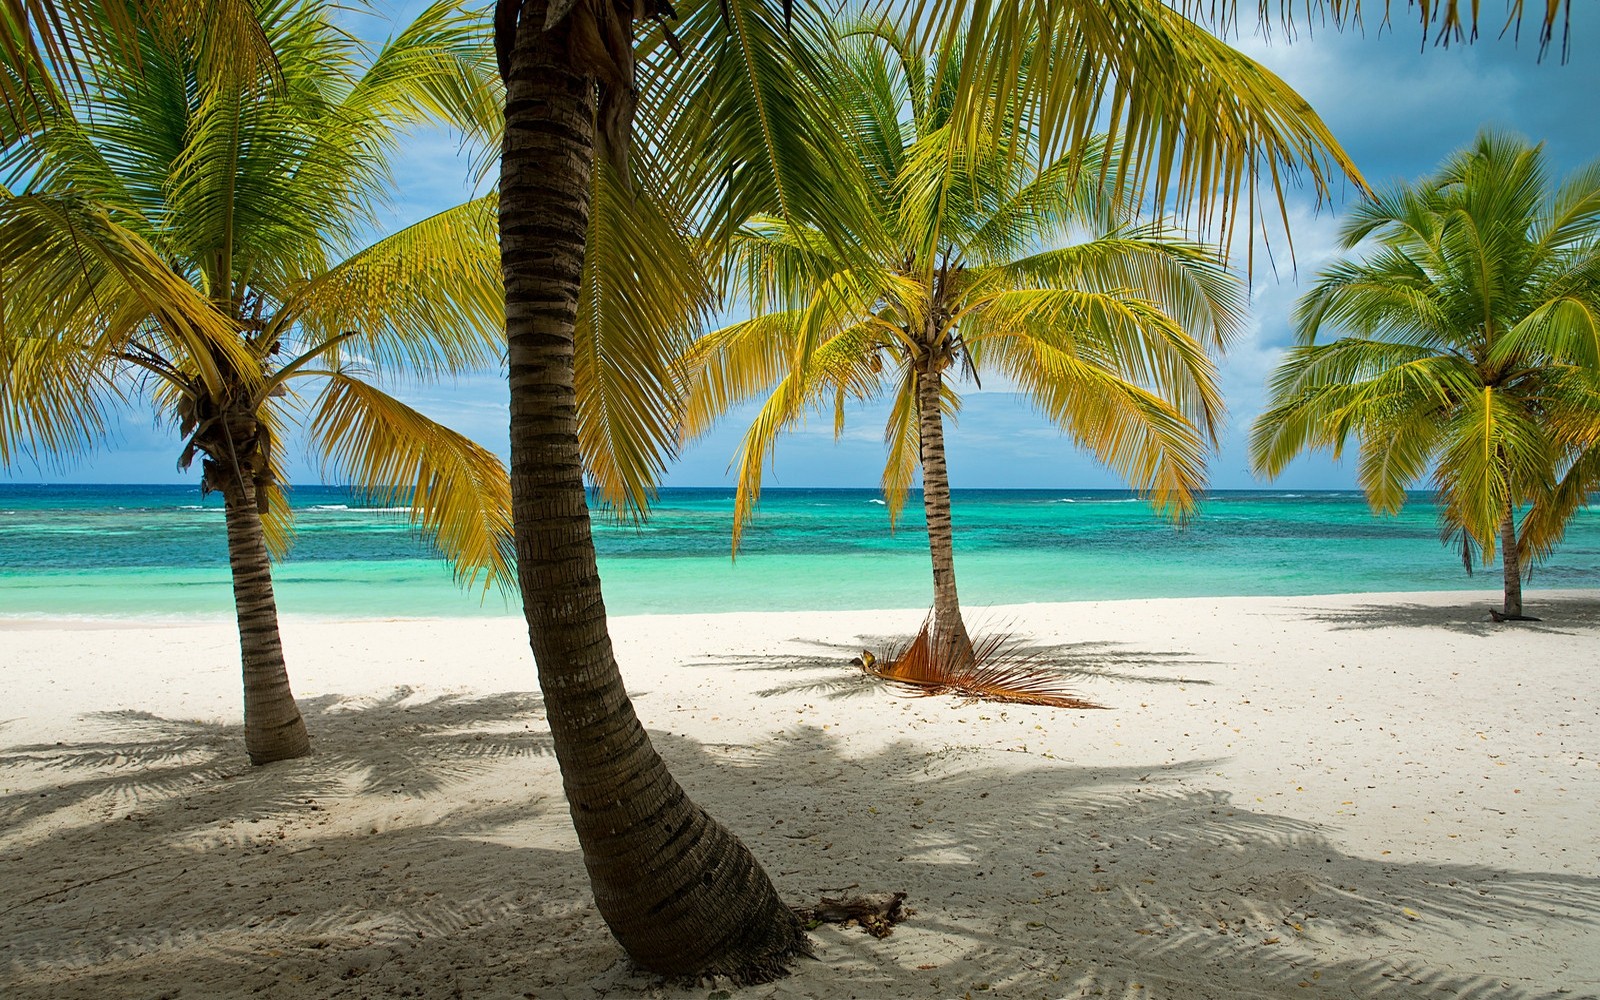 General 1600x1000 beach tropical palm trees Dominican Republic sea Caribbean sand island summer horizon dappled sunlight